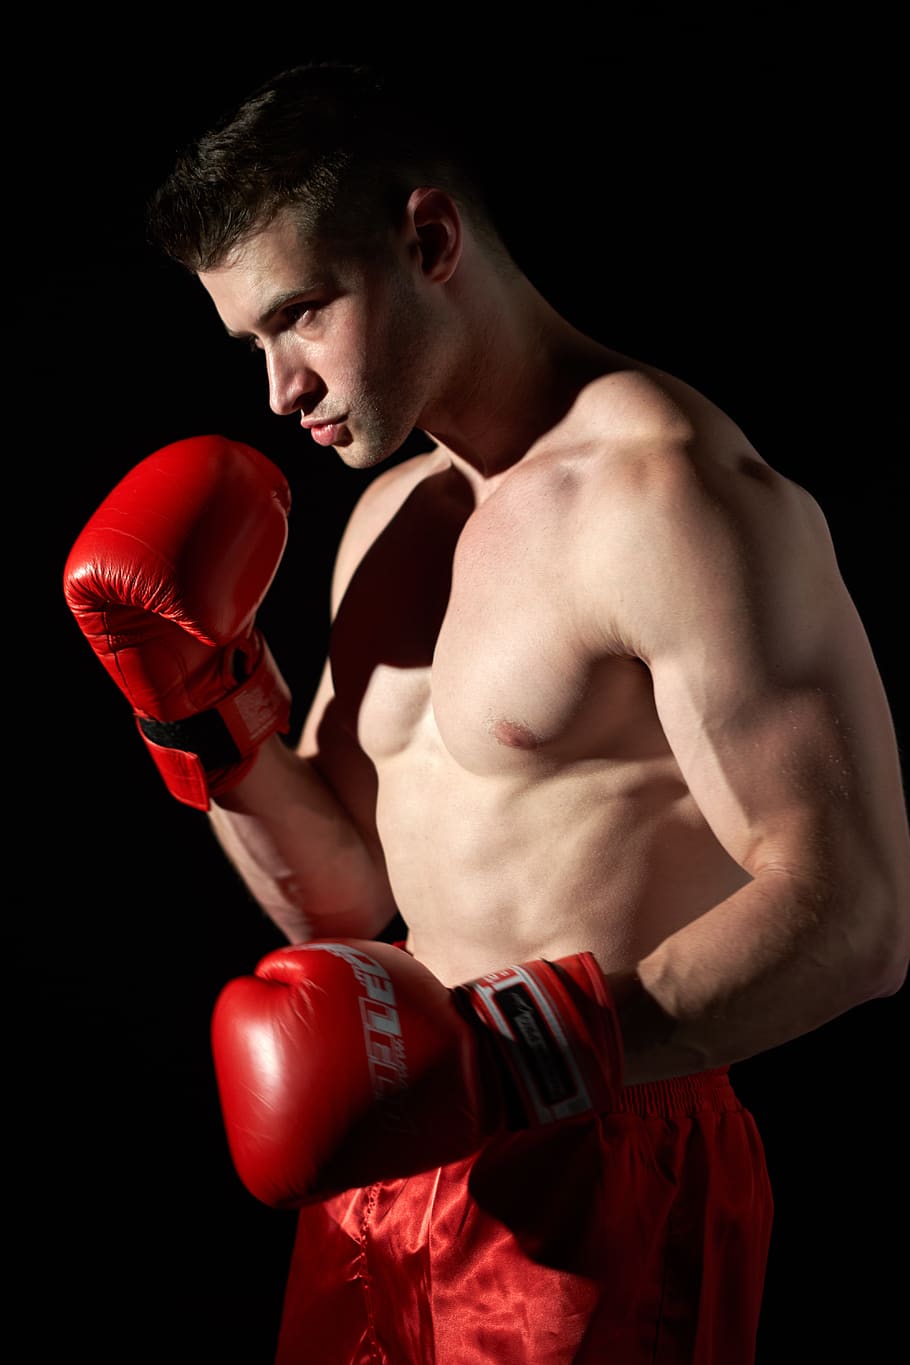 ボクシング, スポーツ, ボクサー, 戦い, 手袋, キックボクシング, アスリート, UFC, 戦闘機, モデル